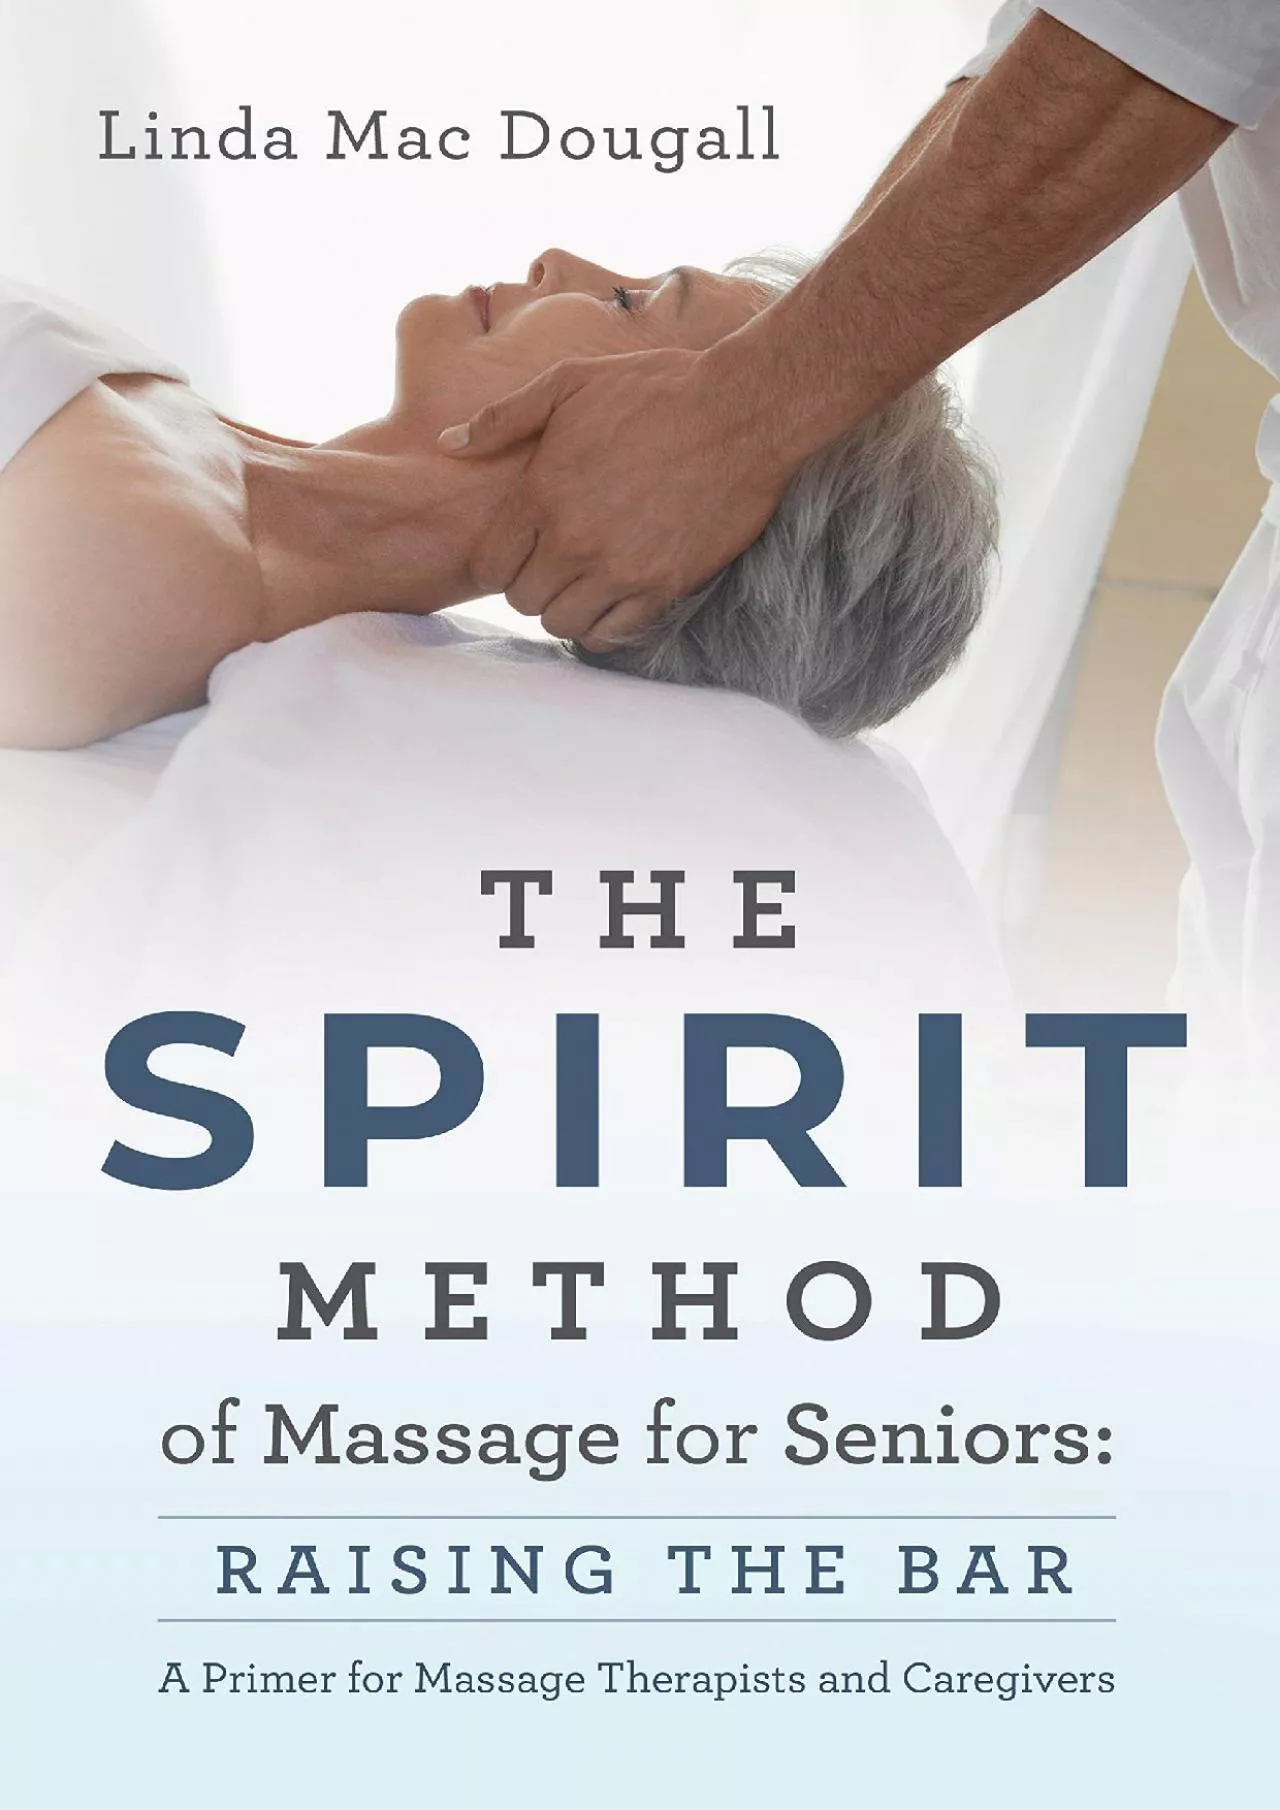 [READ] The SPIRIT Method of Massage for Seniors: Raising the Bar...A Primer for Massage